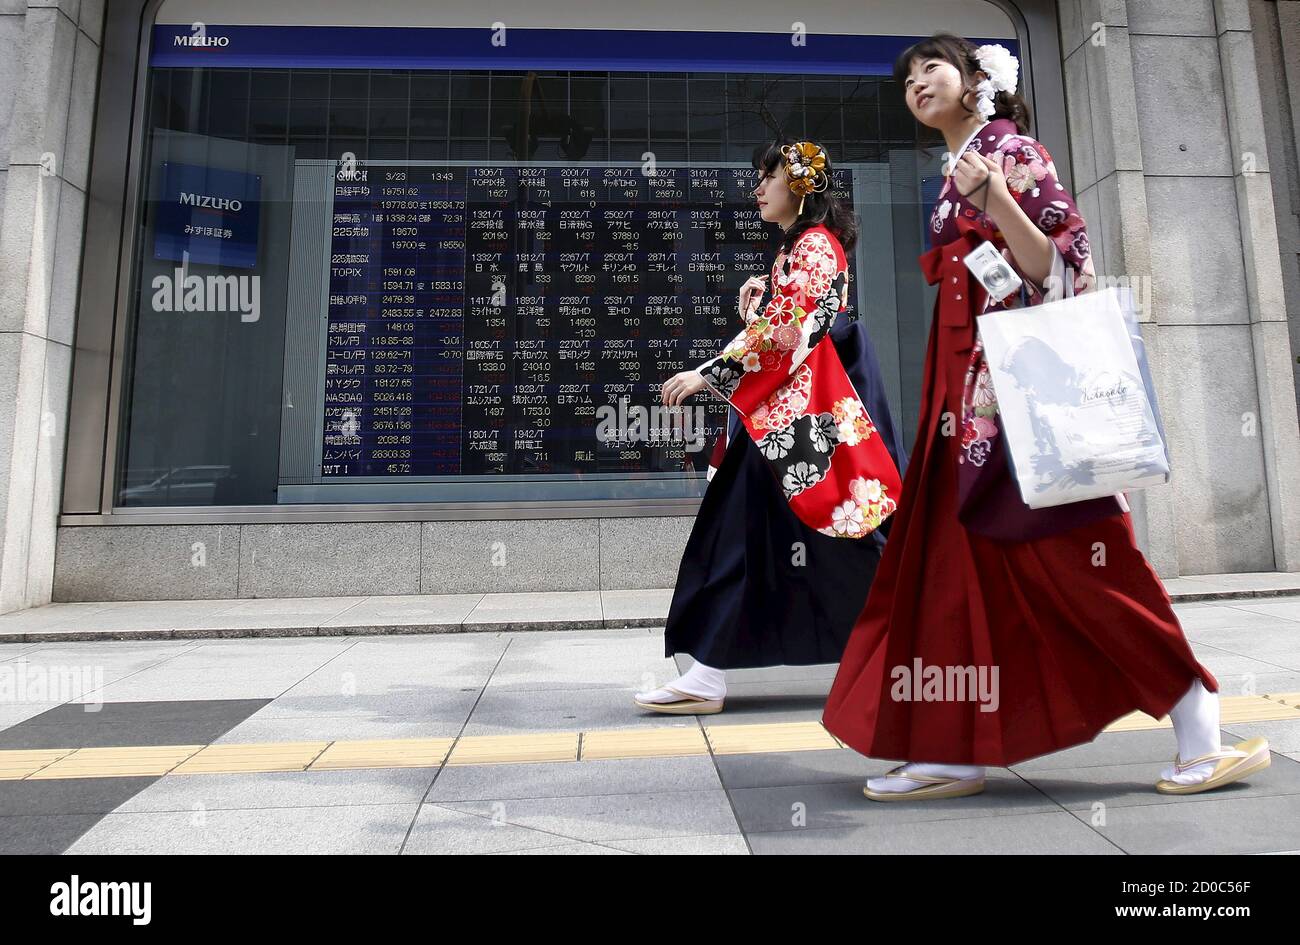 Les femmes portant Hakama, ou kimono traditionnel japonais, marchent devant  un panneau électronique, montrant les différents prix des actions, en  dehors d'une maison de courtage à Tokyo, le 23 mars 2015. Les